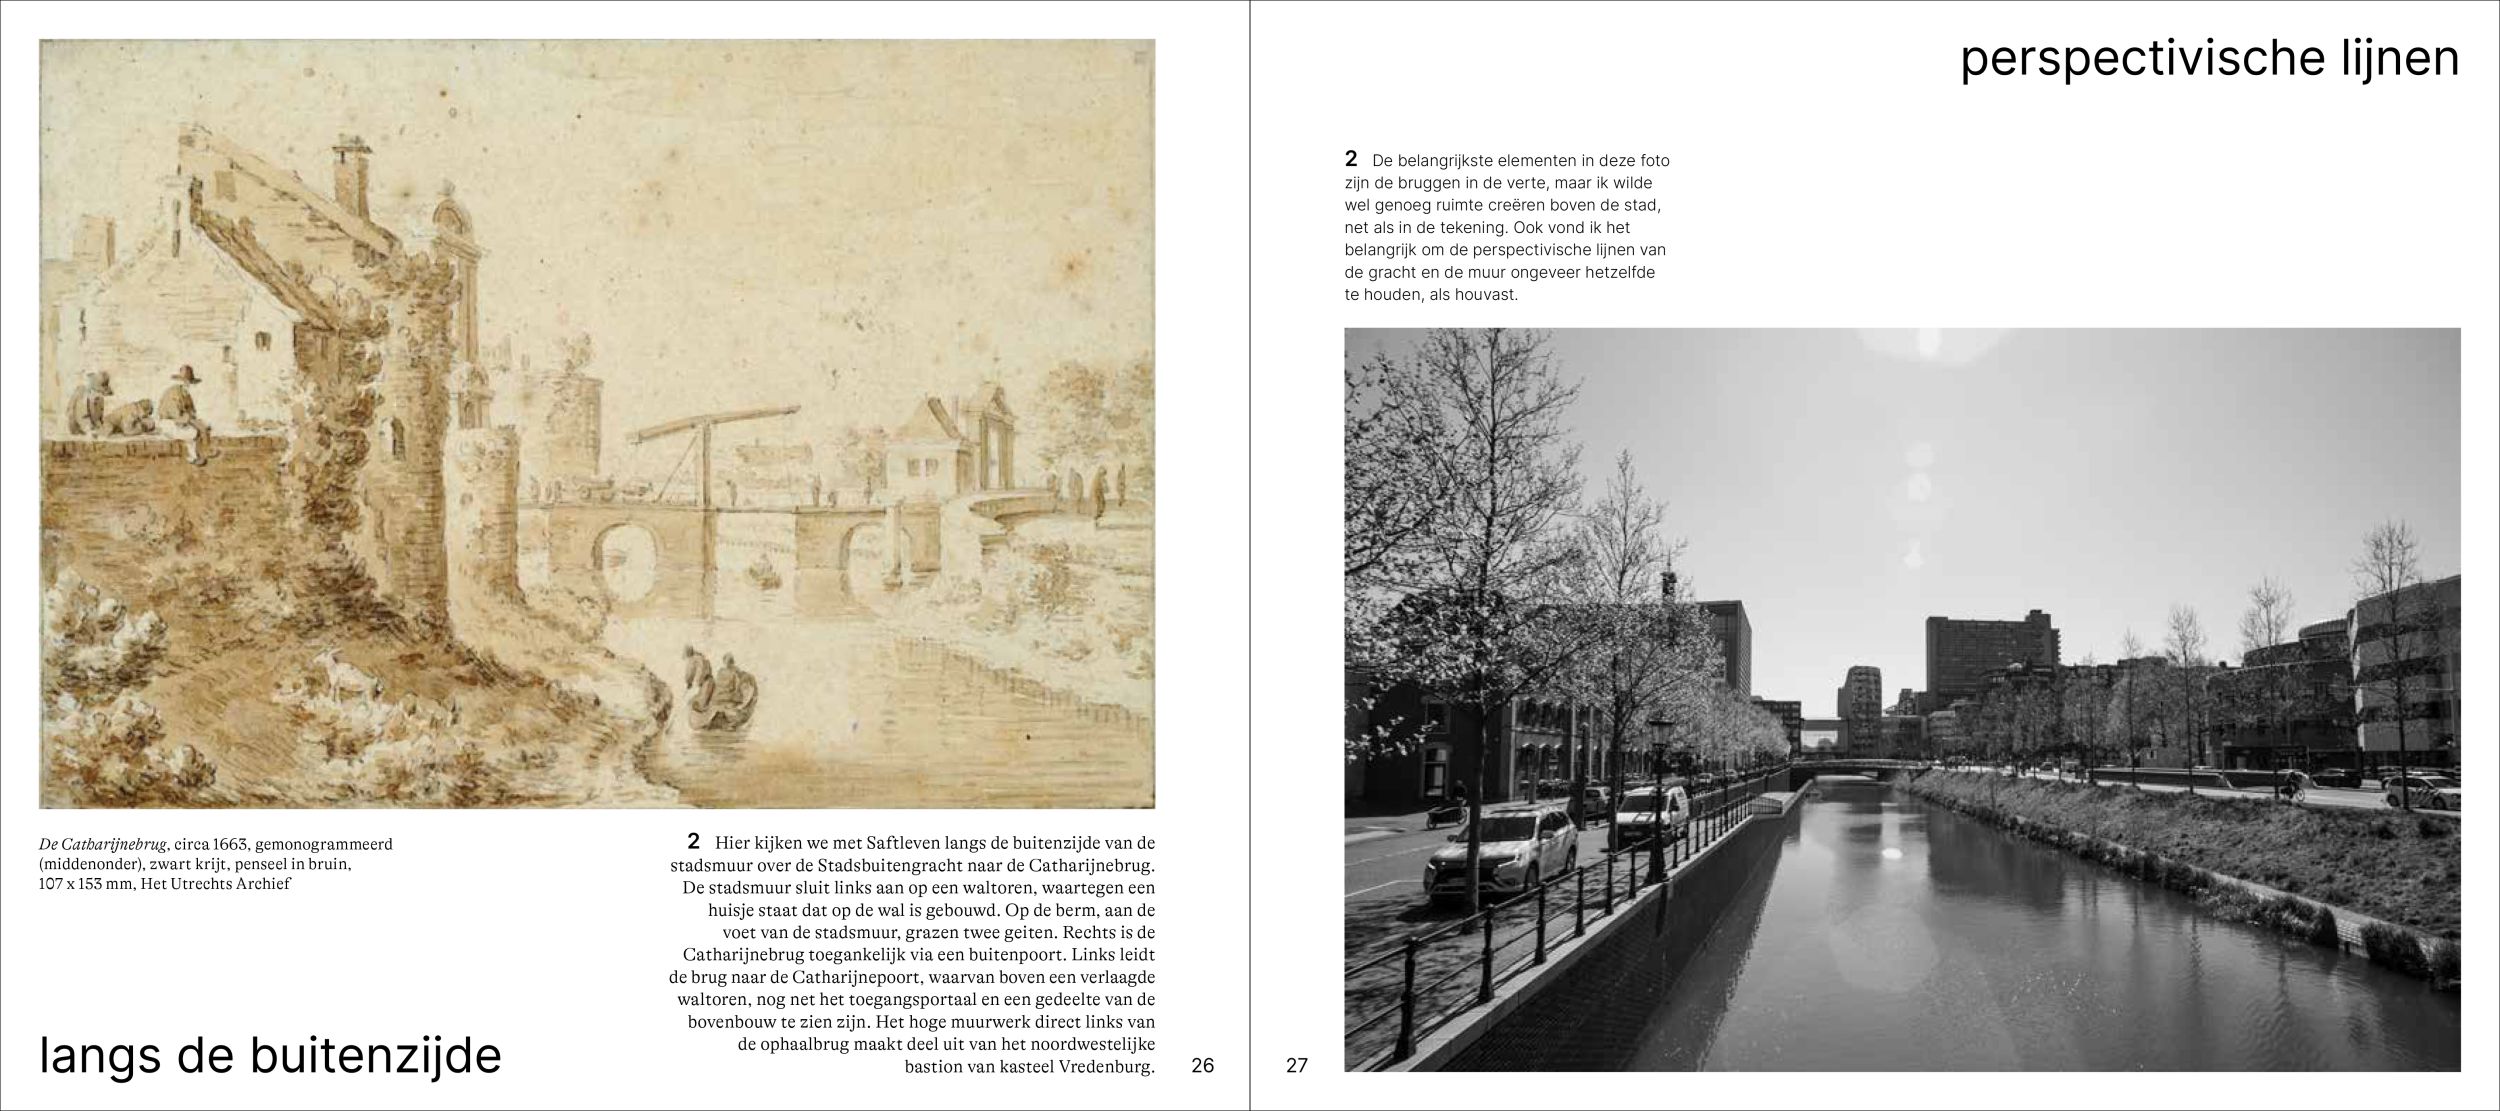 Inkijkexemplaar van het boek: <em>Wandelen over de Utrechtse stadswal. Tekeningen van toen en foto’s van nu</em> - © Uitgeverij Matrijs